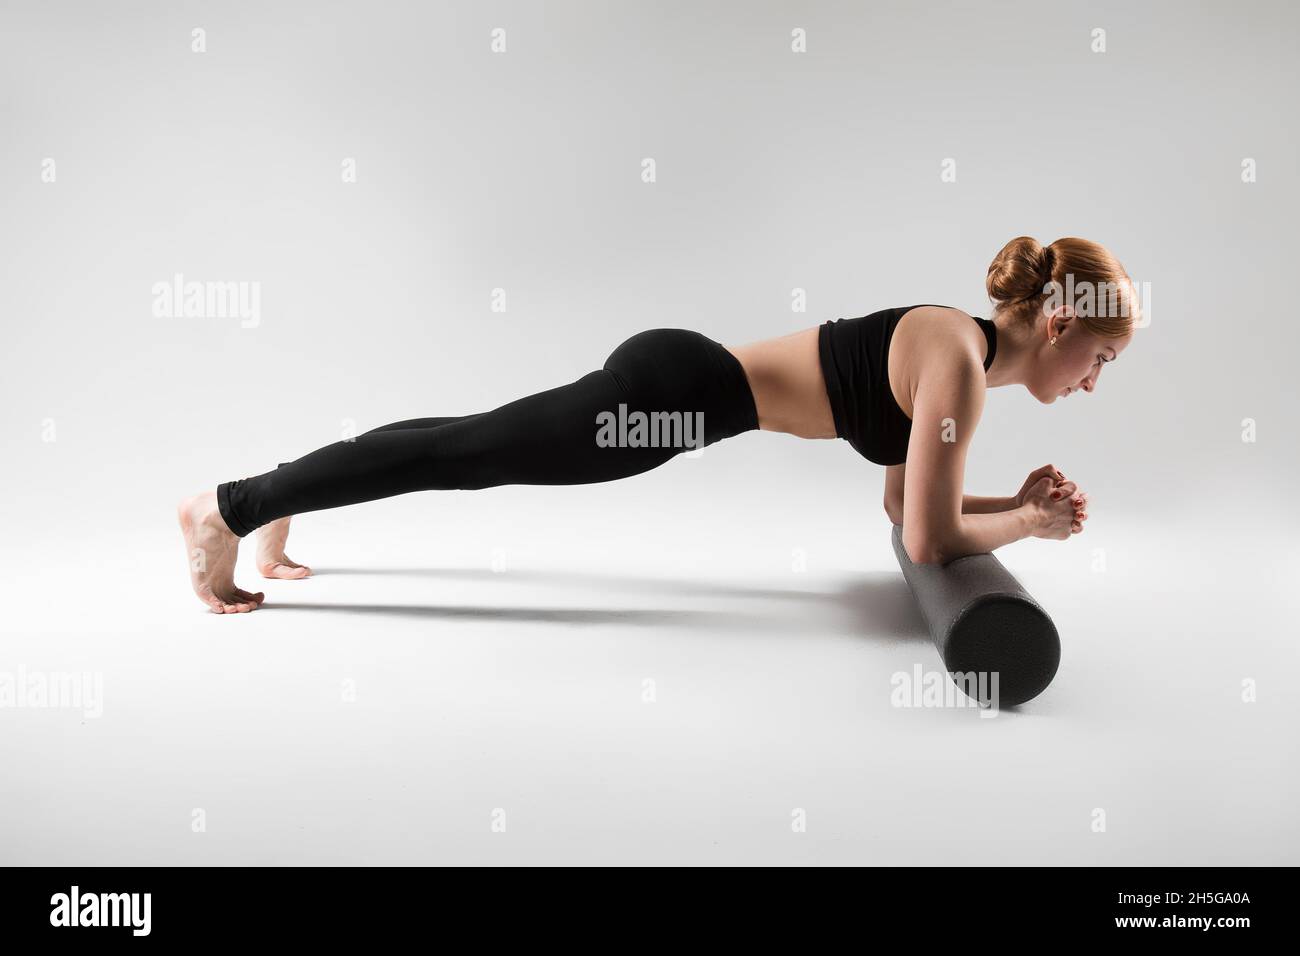 Un entraîneur professionnel de yoga et de pilates montre des exercices de yoga, pilates, stretching et d'autres types de forme physique sur un tapis avec l'équipement, avec des fitnes Banque D'Images